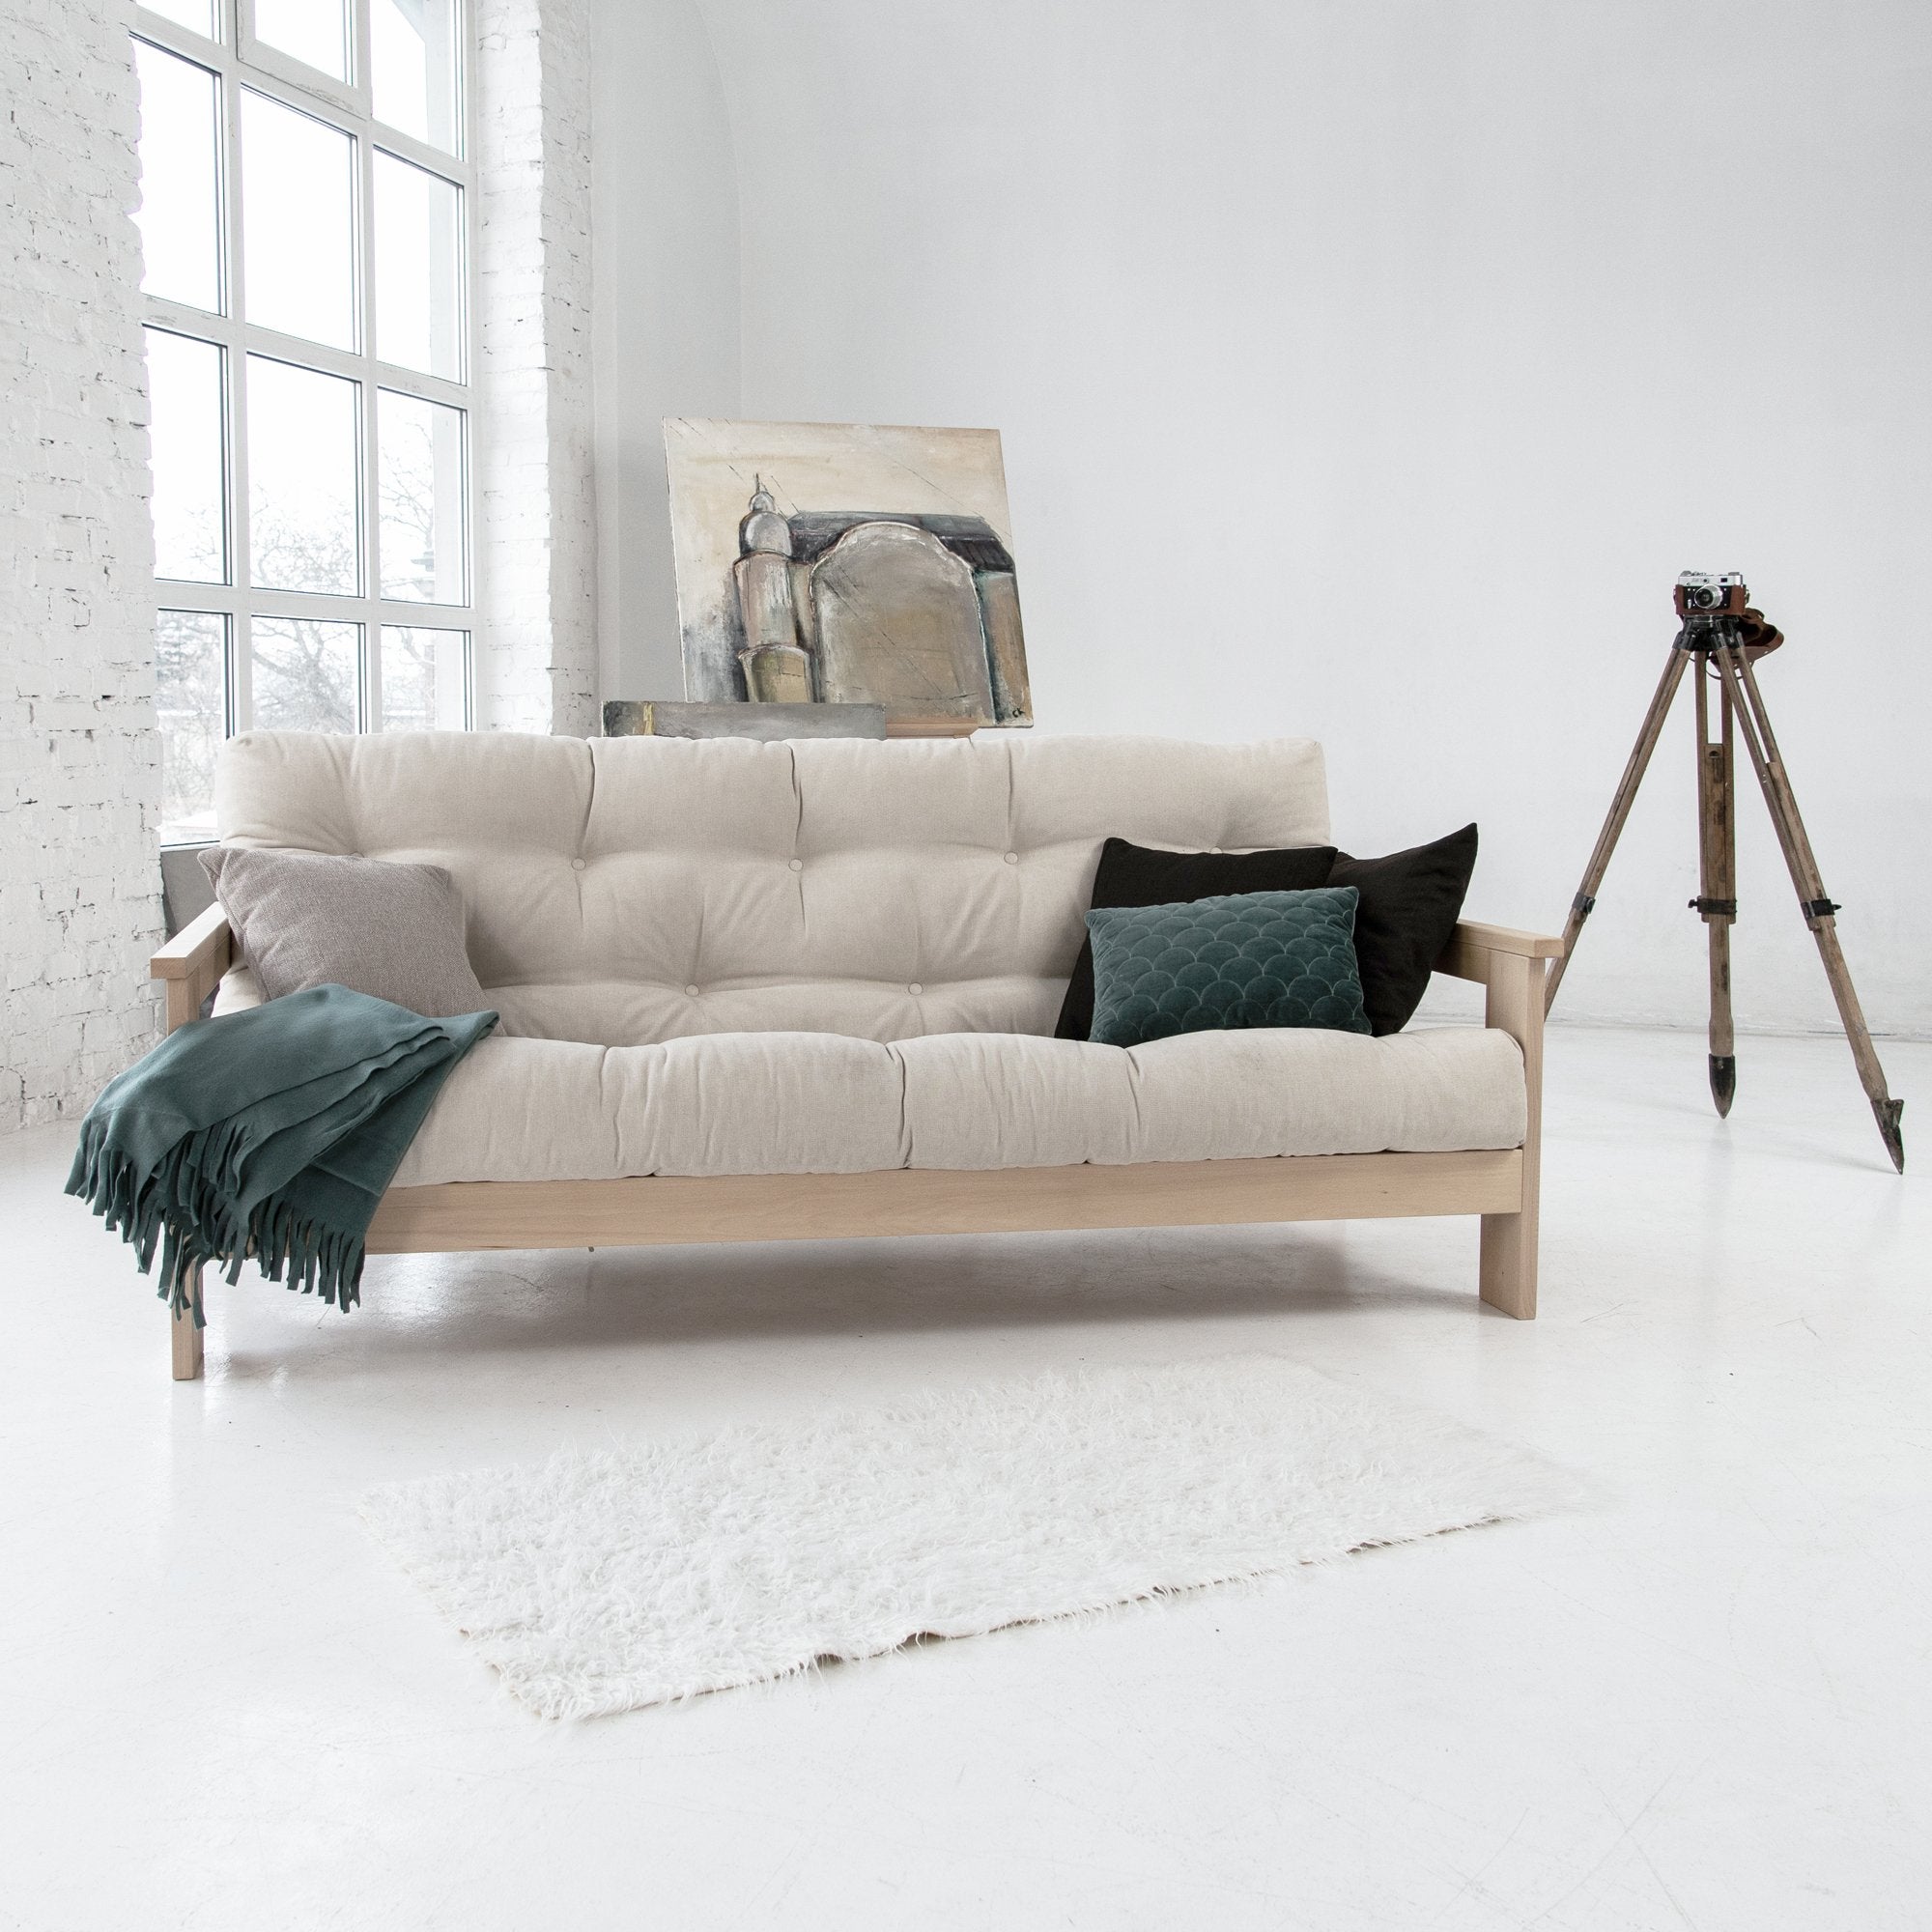 Розкладний диван-футон MEXICO, бук натурального кольору